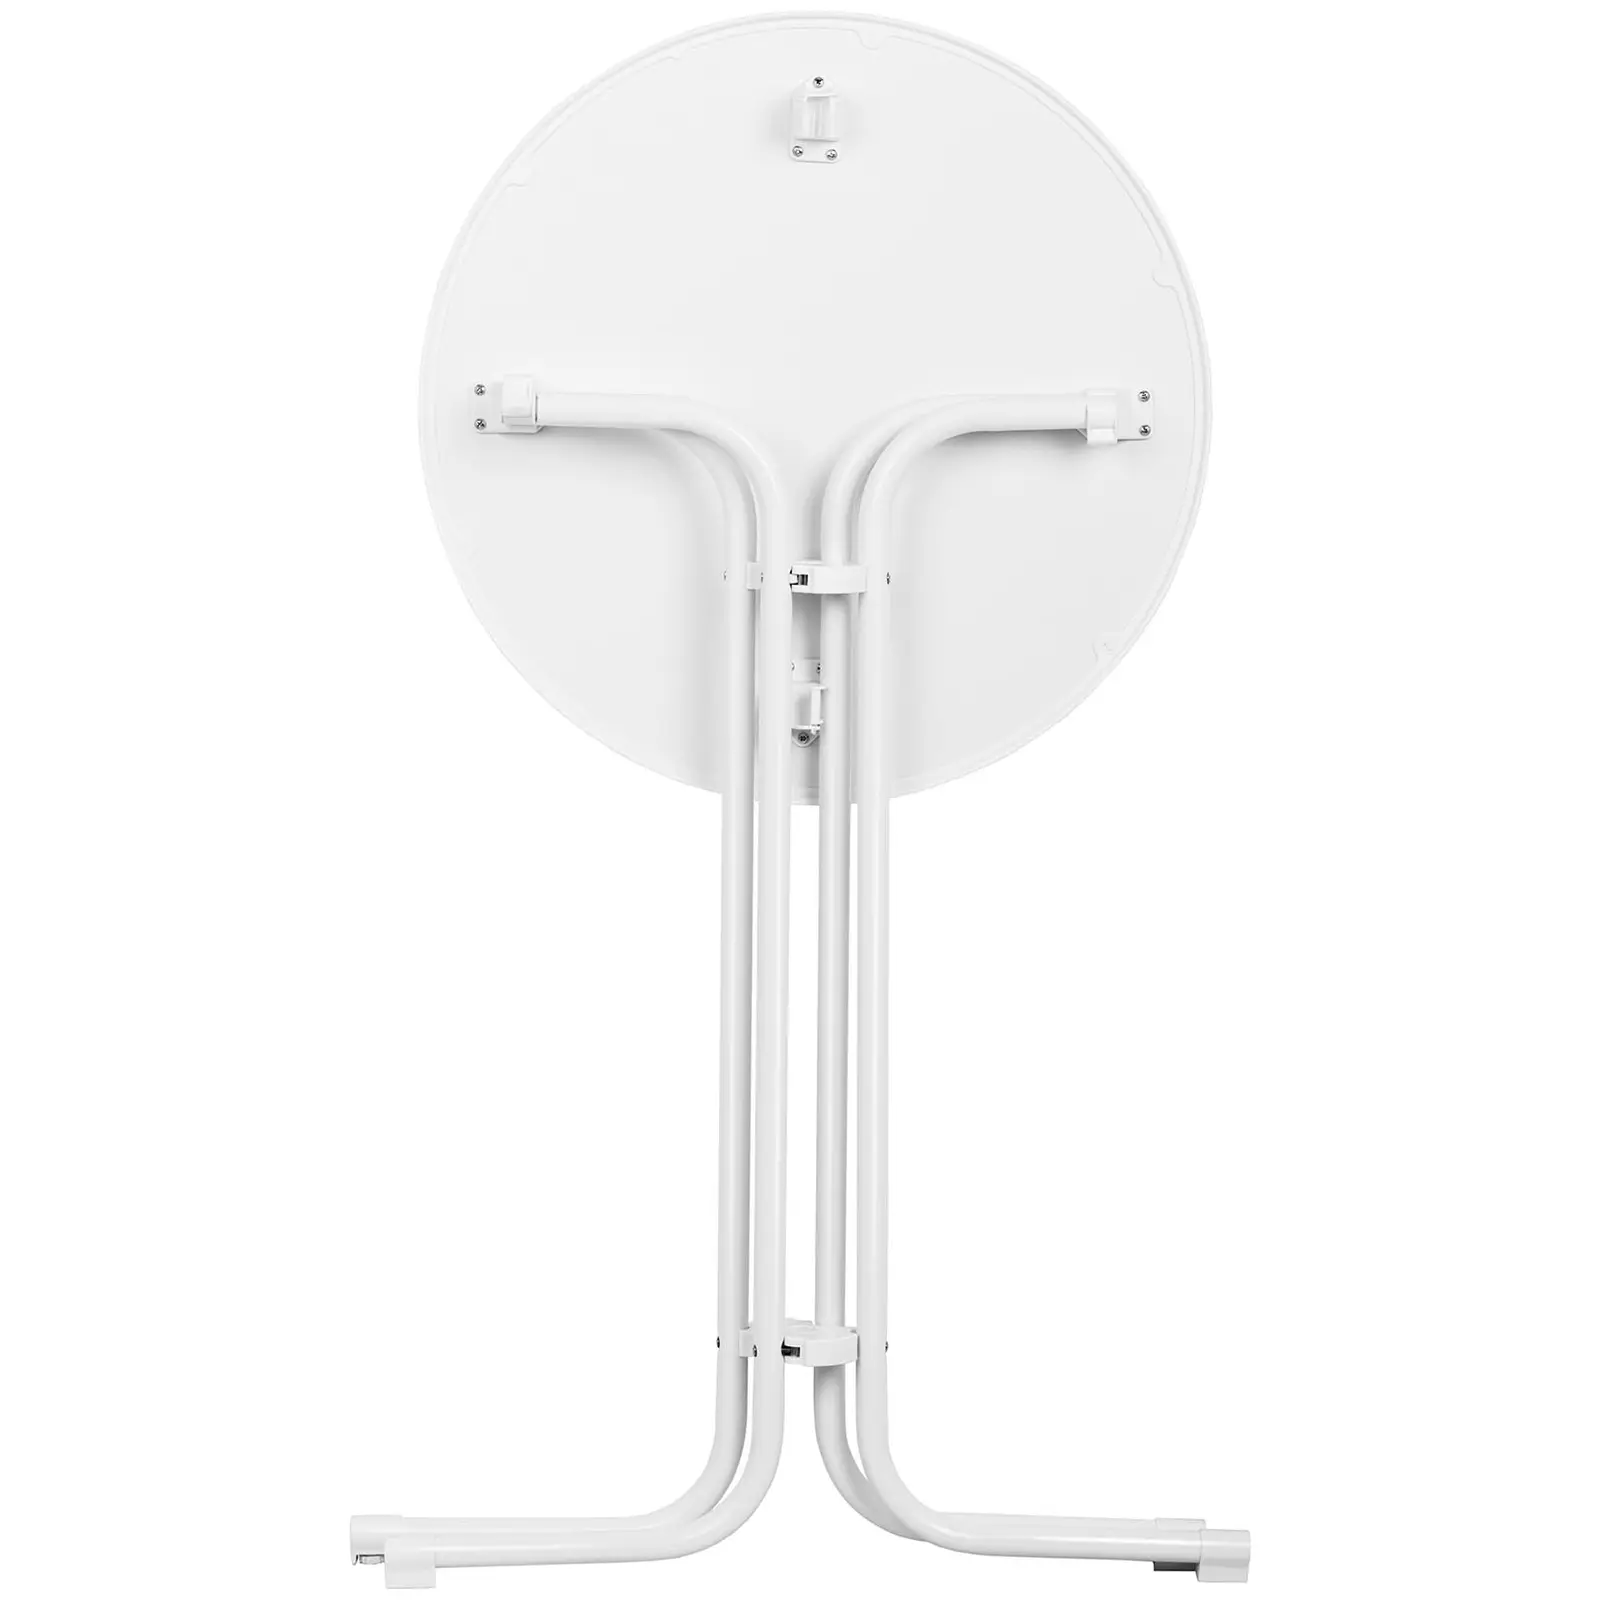 Stolik barowy - biały - składany - Ø70 cm - 110 cm